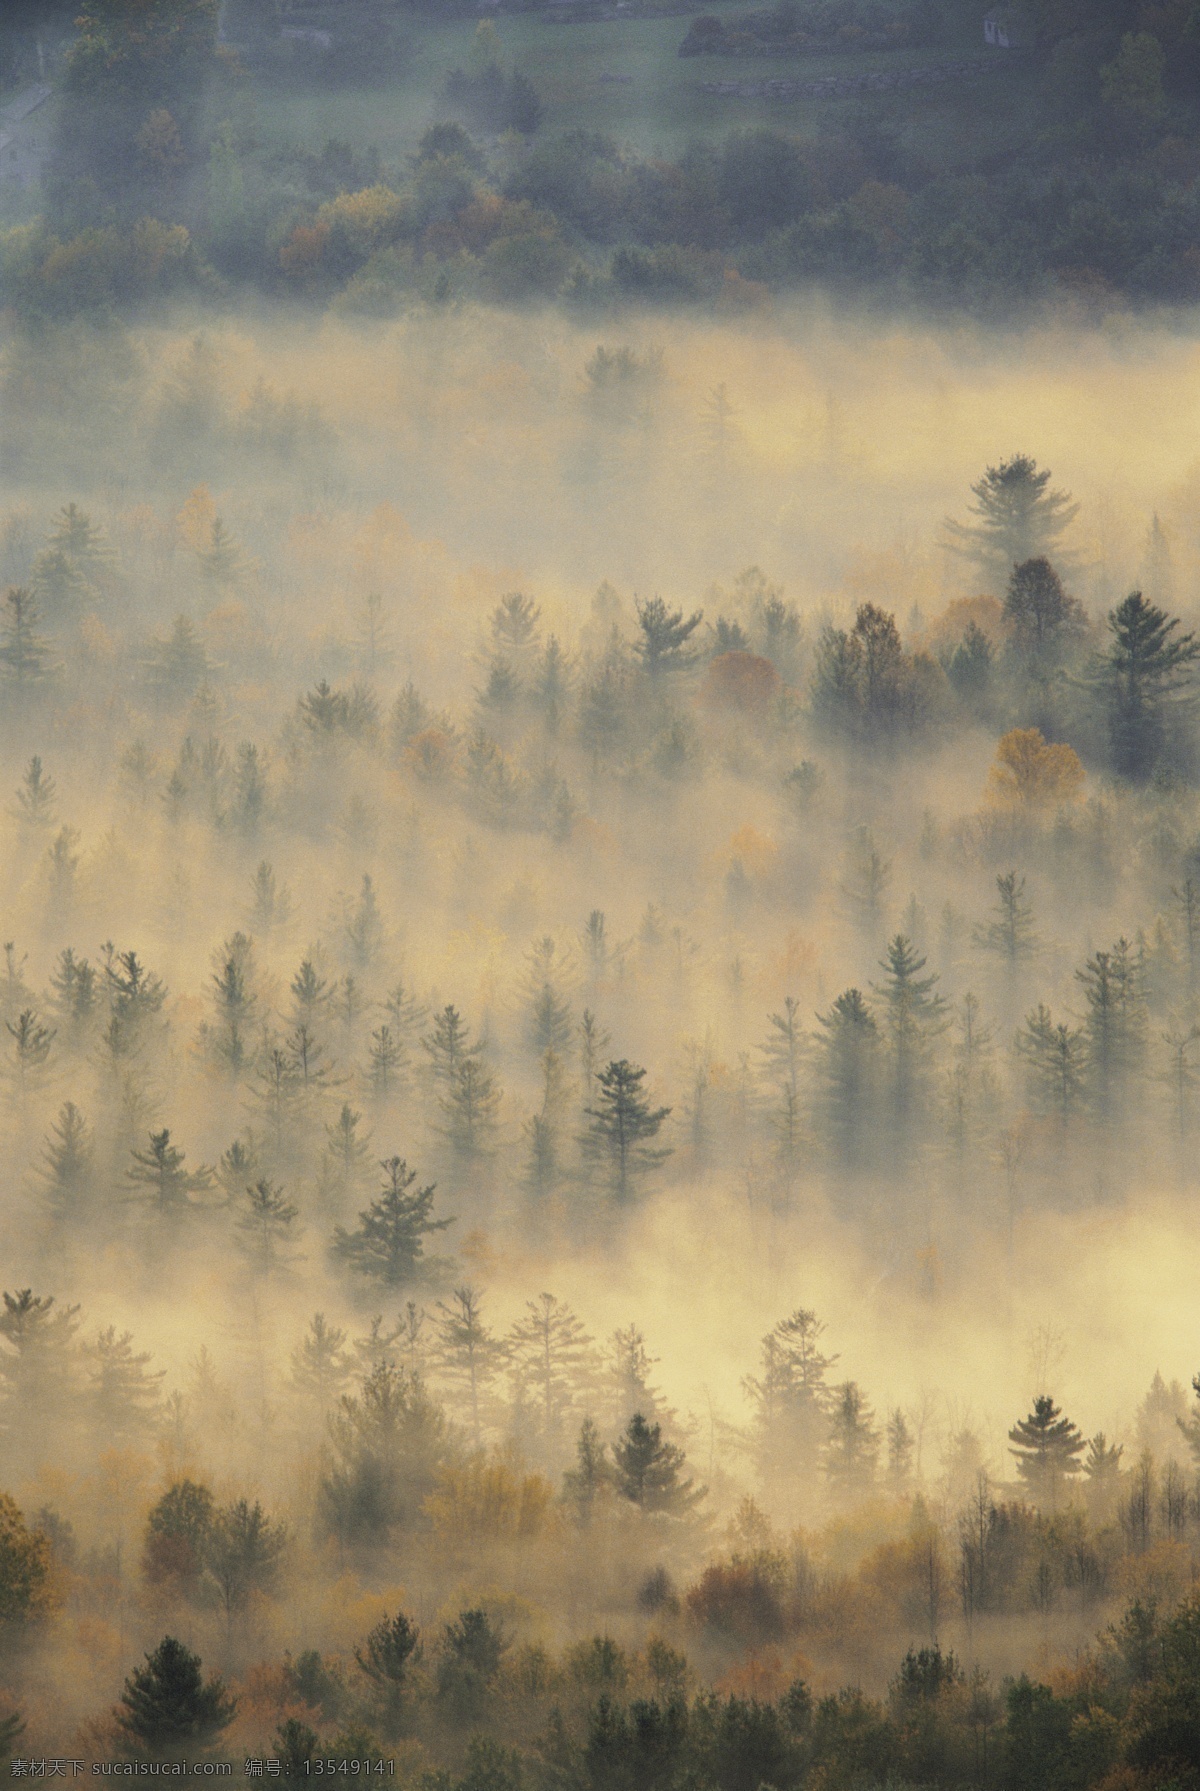 大雾 时 森林 林木风景 树林 自然景观 自然风景 风景 摄影图库 摄影图片 大自然 高清图片 风景图片 jpg图片 花草树木 生物世界